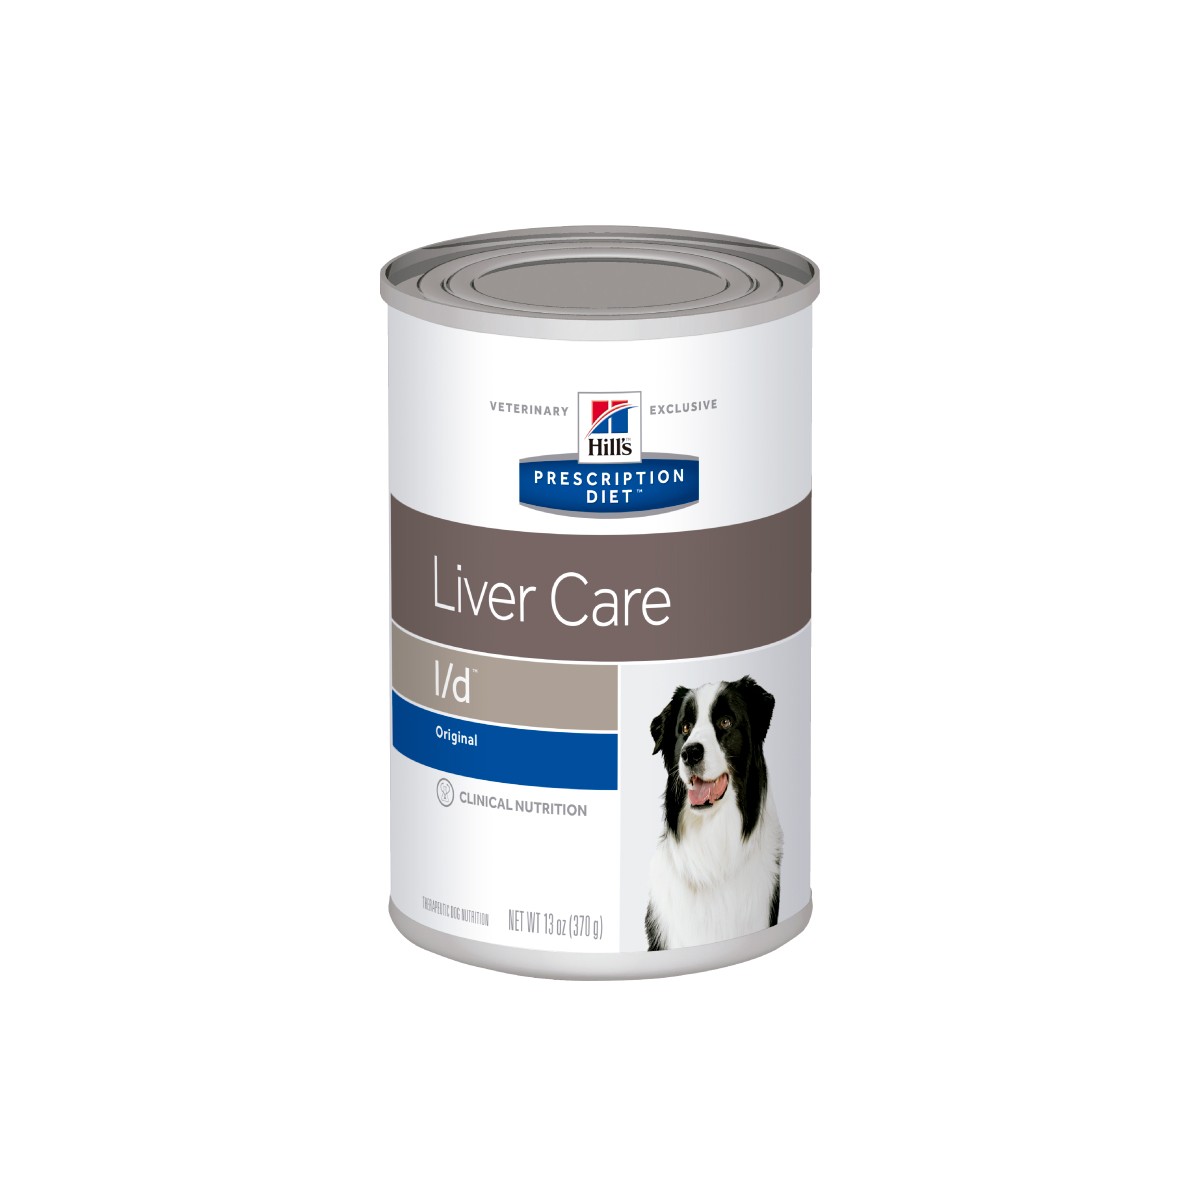 Корм hepatic для собак. Hills Liver Care l/d для собак. Консервы для собак Гепатик Хилс Хиллс. Корм для собак Hills Prescription Diet l/d. Hill's Prescription Diet l/d Liver Care.